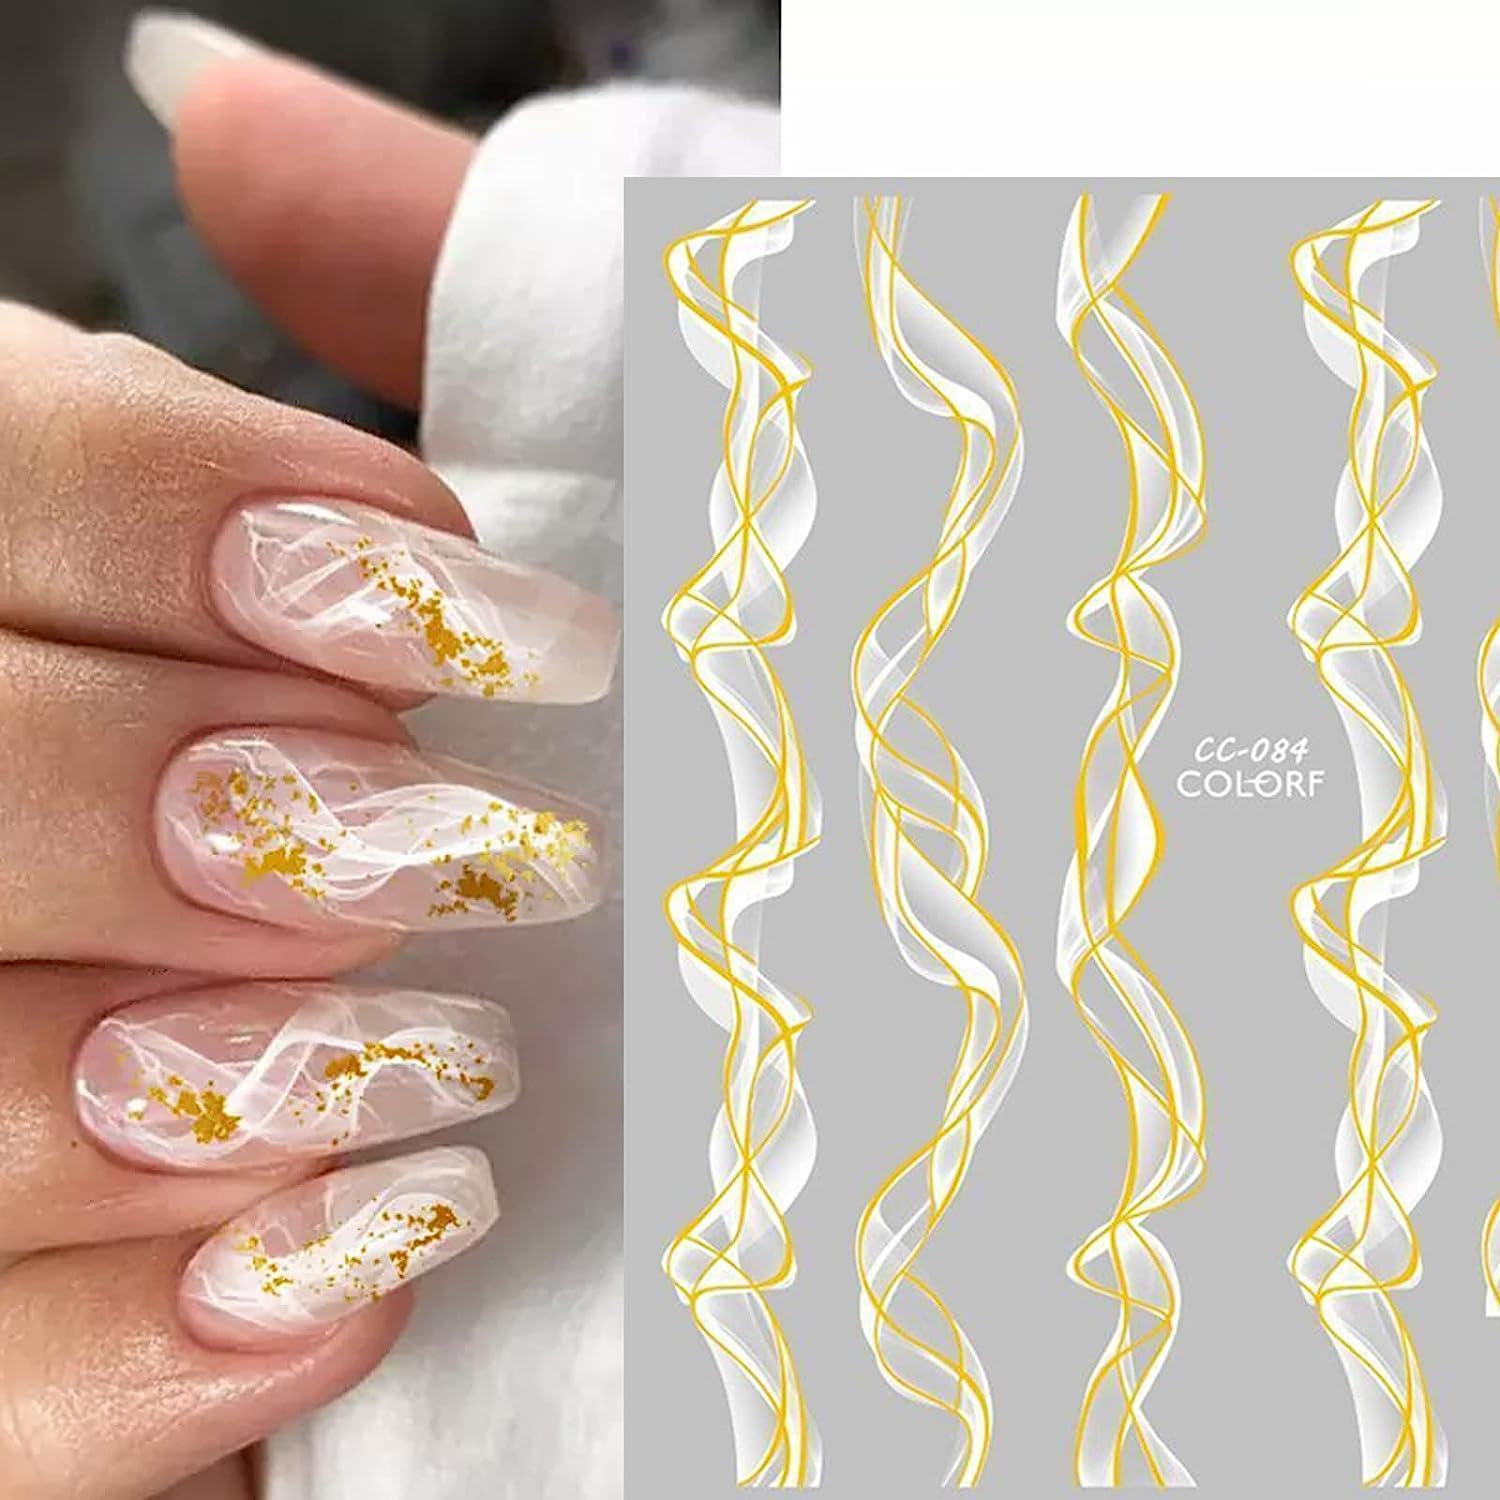 Nexgen Mails Black White & Gold with Rhinestones | Black gold nails, White  nails with gold, White nail designs